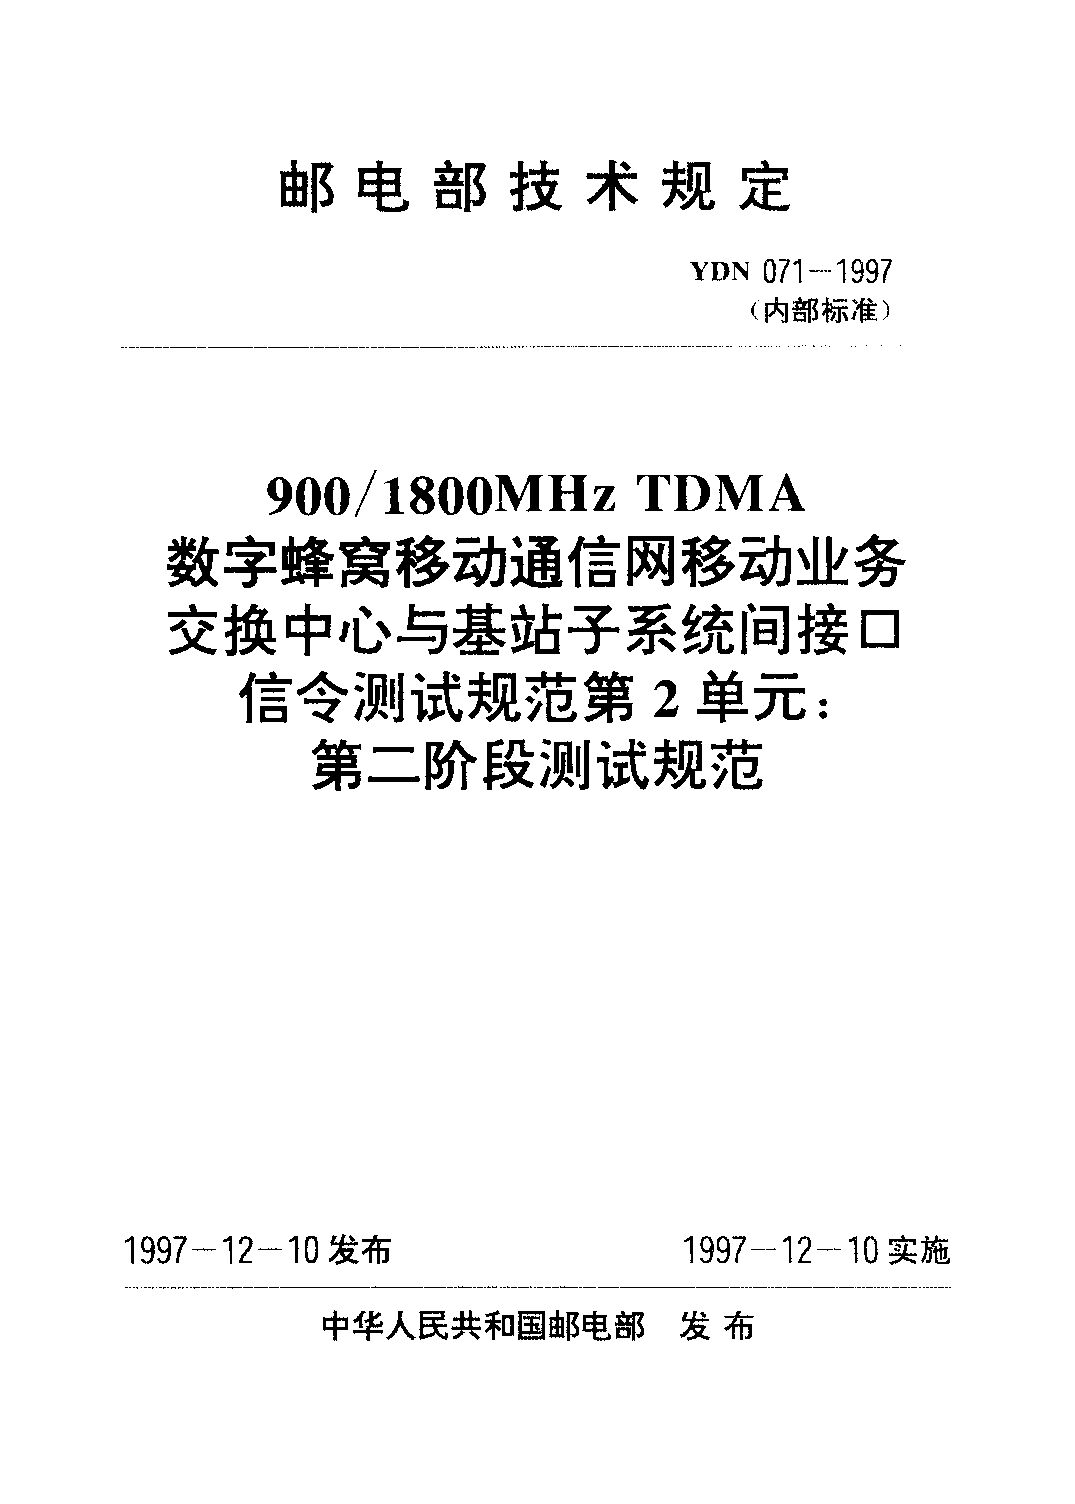 YDN 071-1997封面图